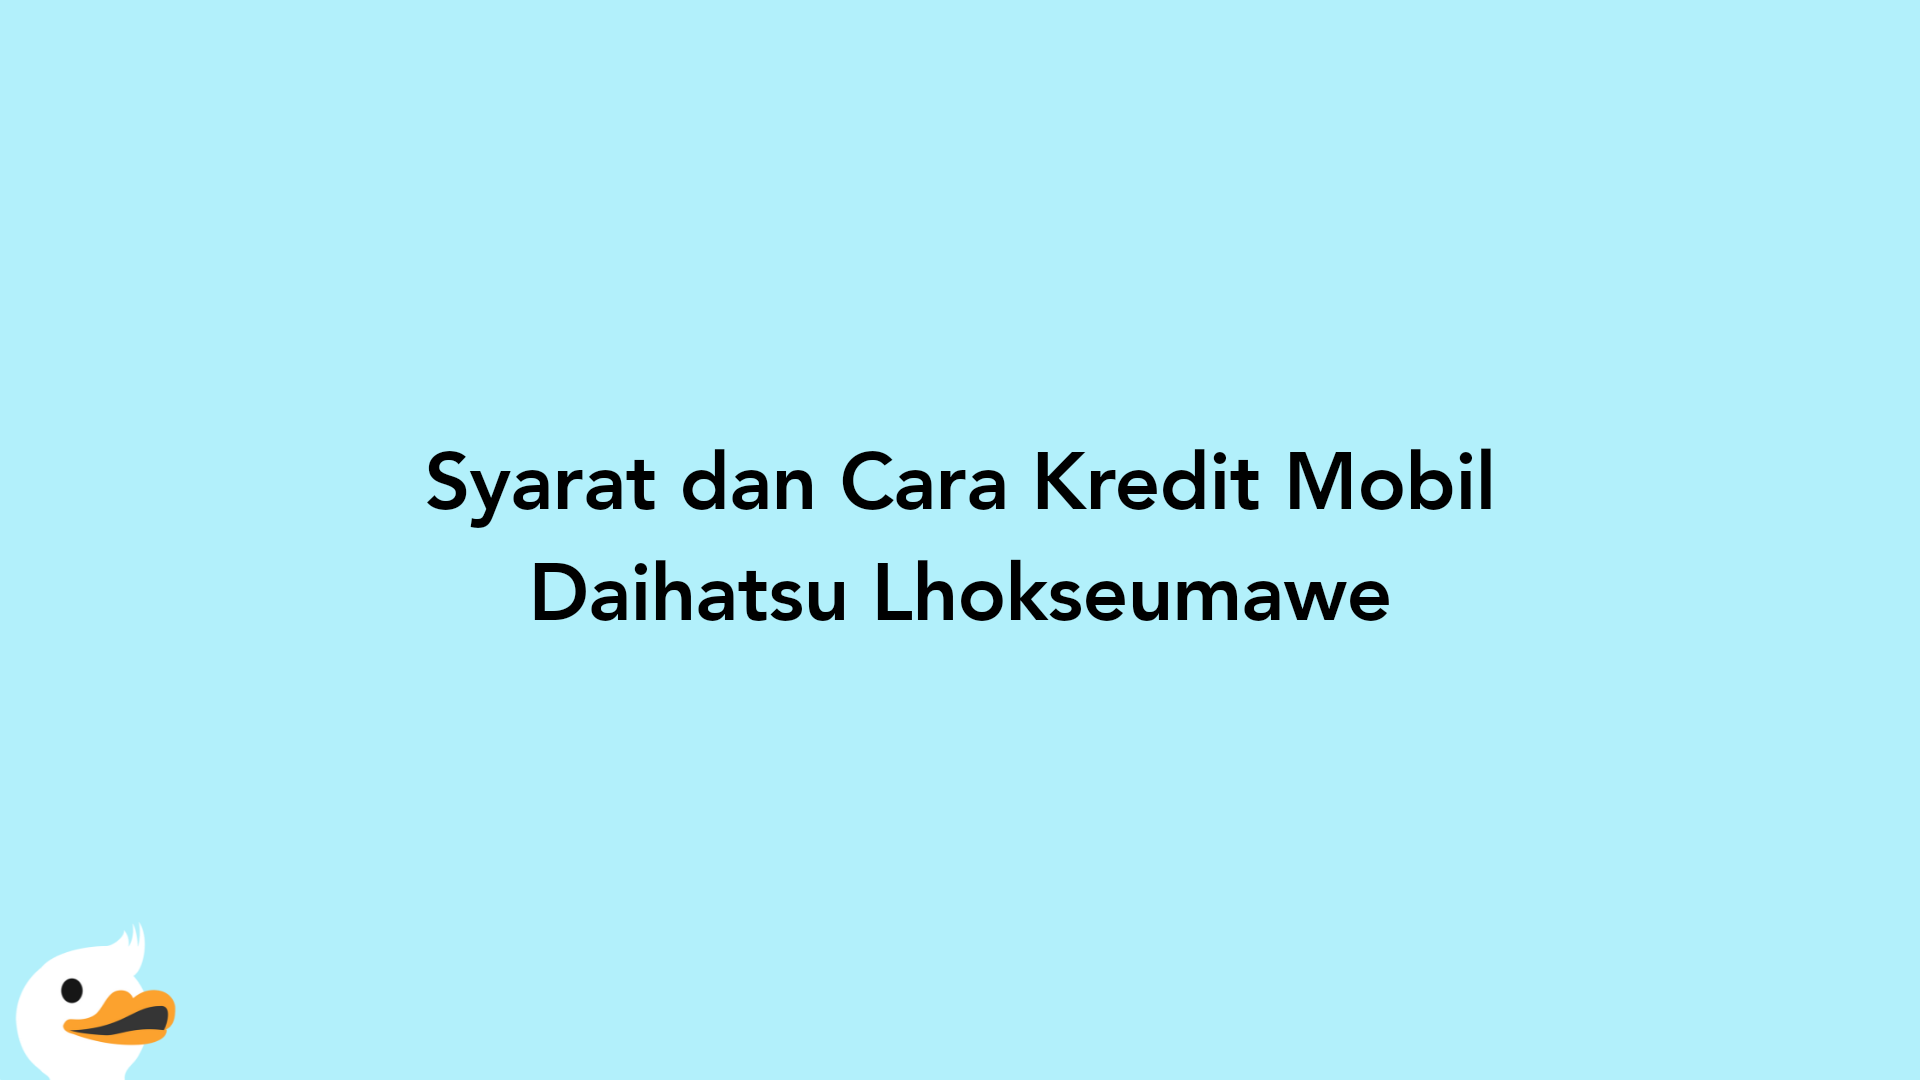 Syarat dan Cara Kredit Mobil Daihatsu Lhokseumawe